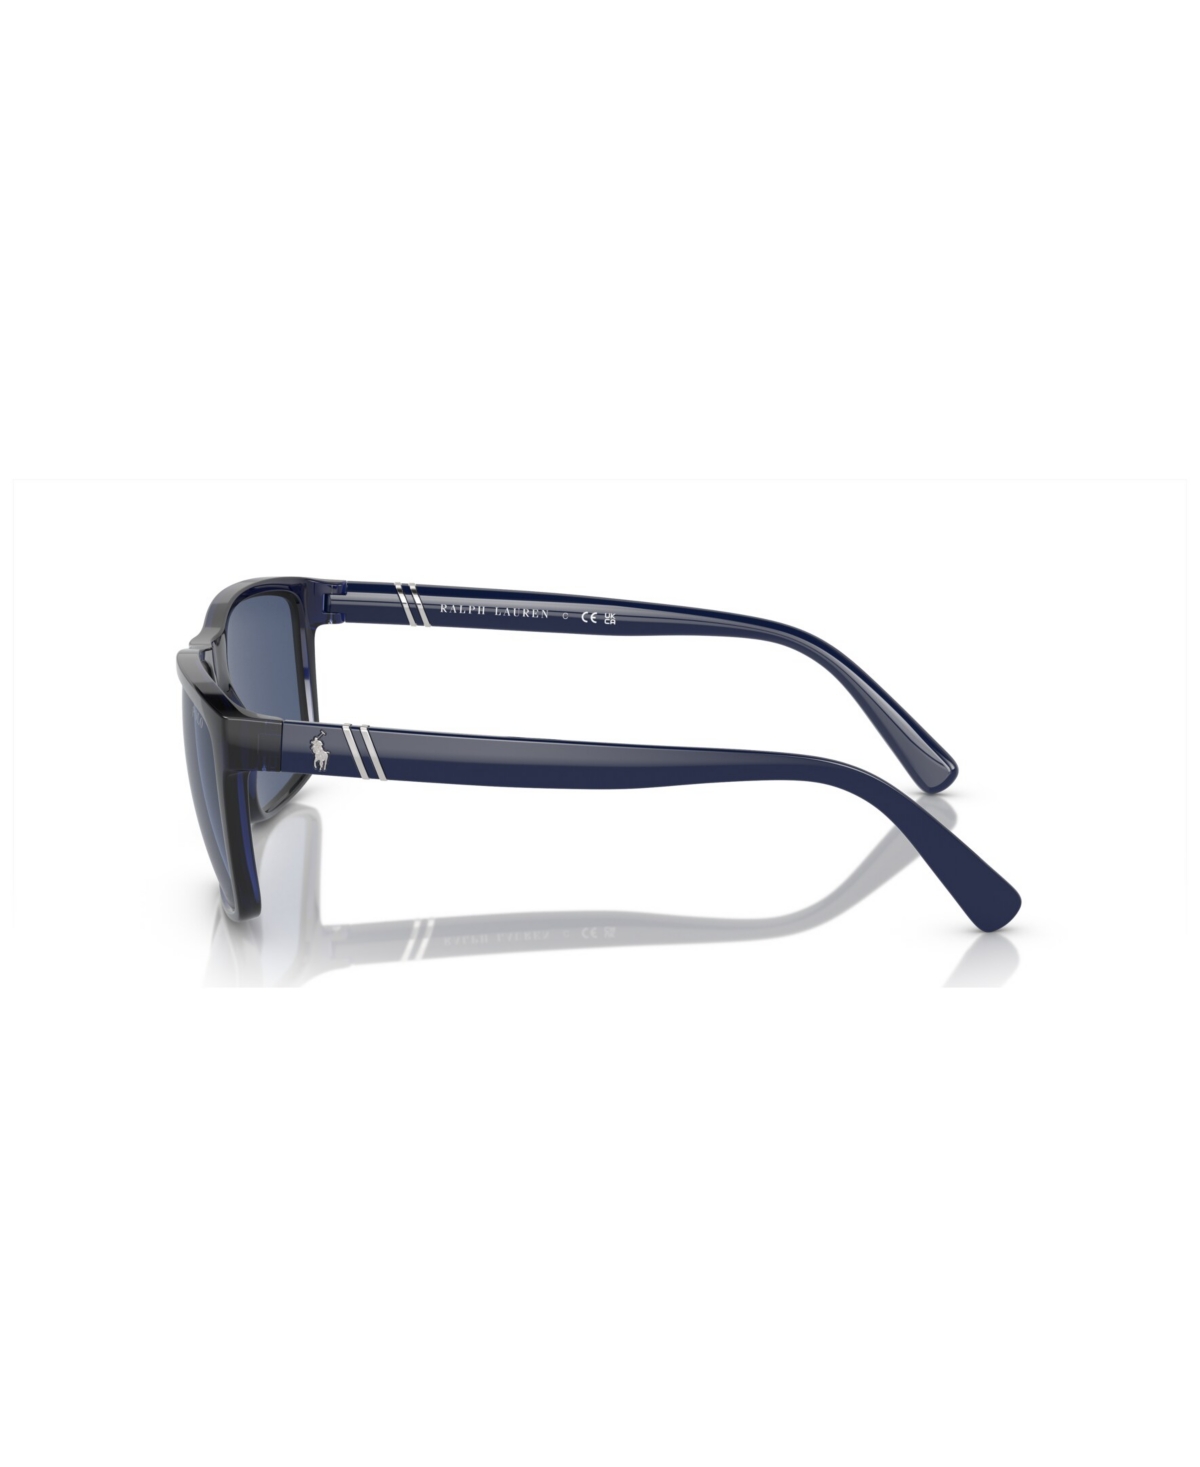 Shop Polo Ralph Lauren Men's Sunglasses Ph4133 In Shiny Transparent Navy Blue